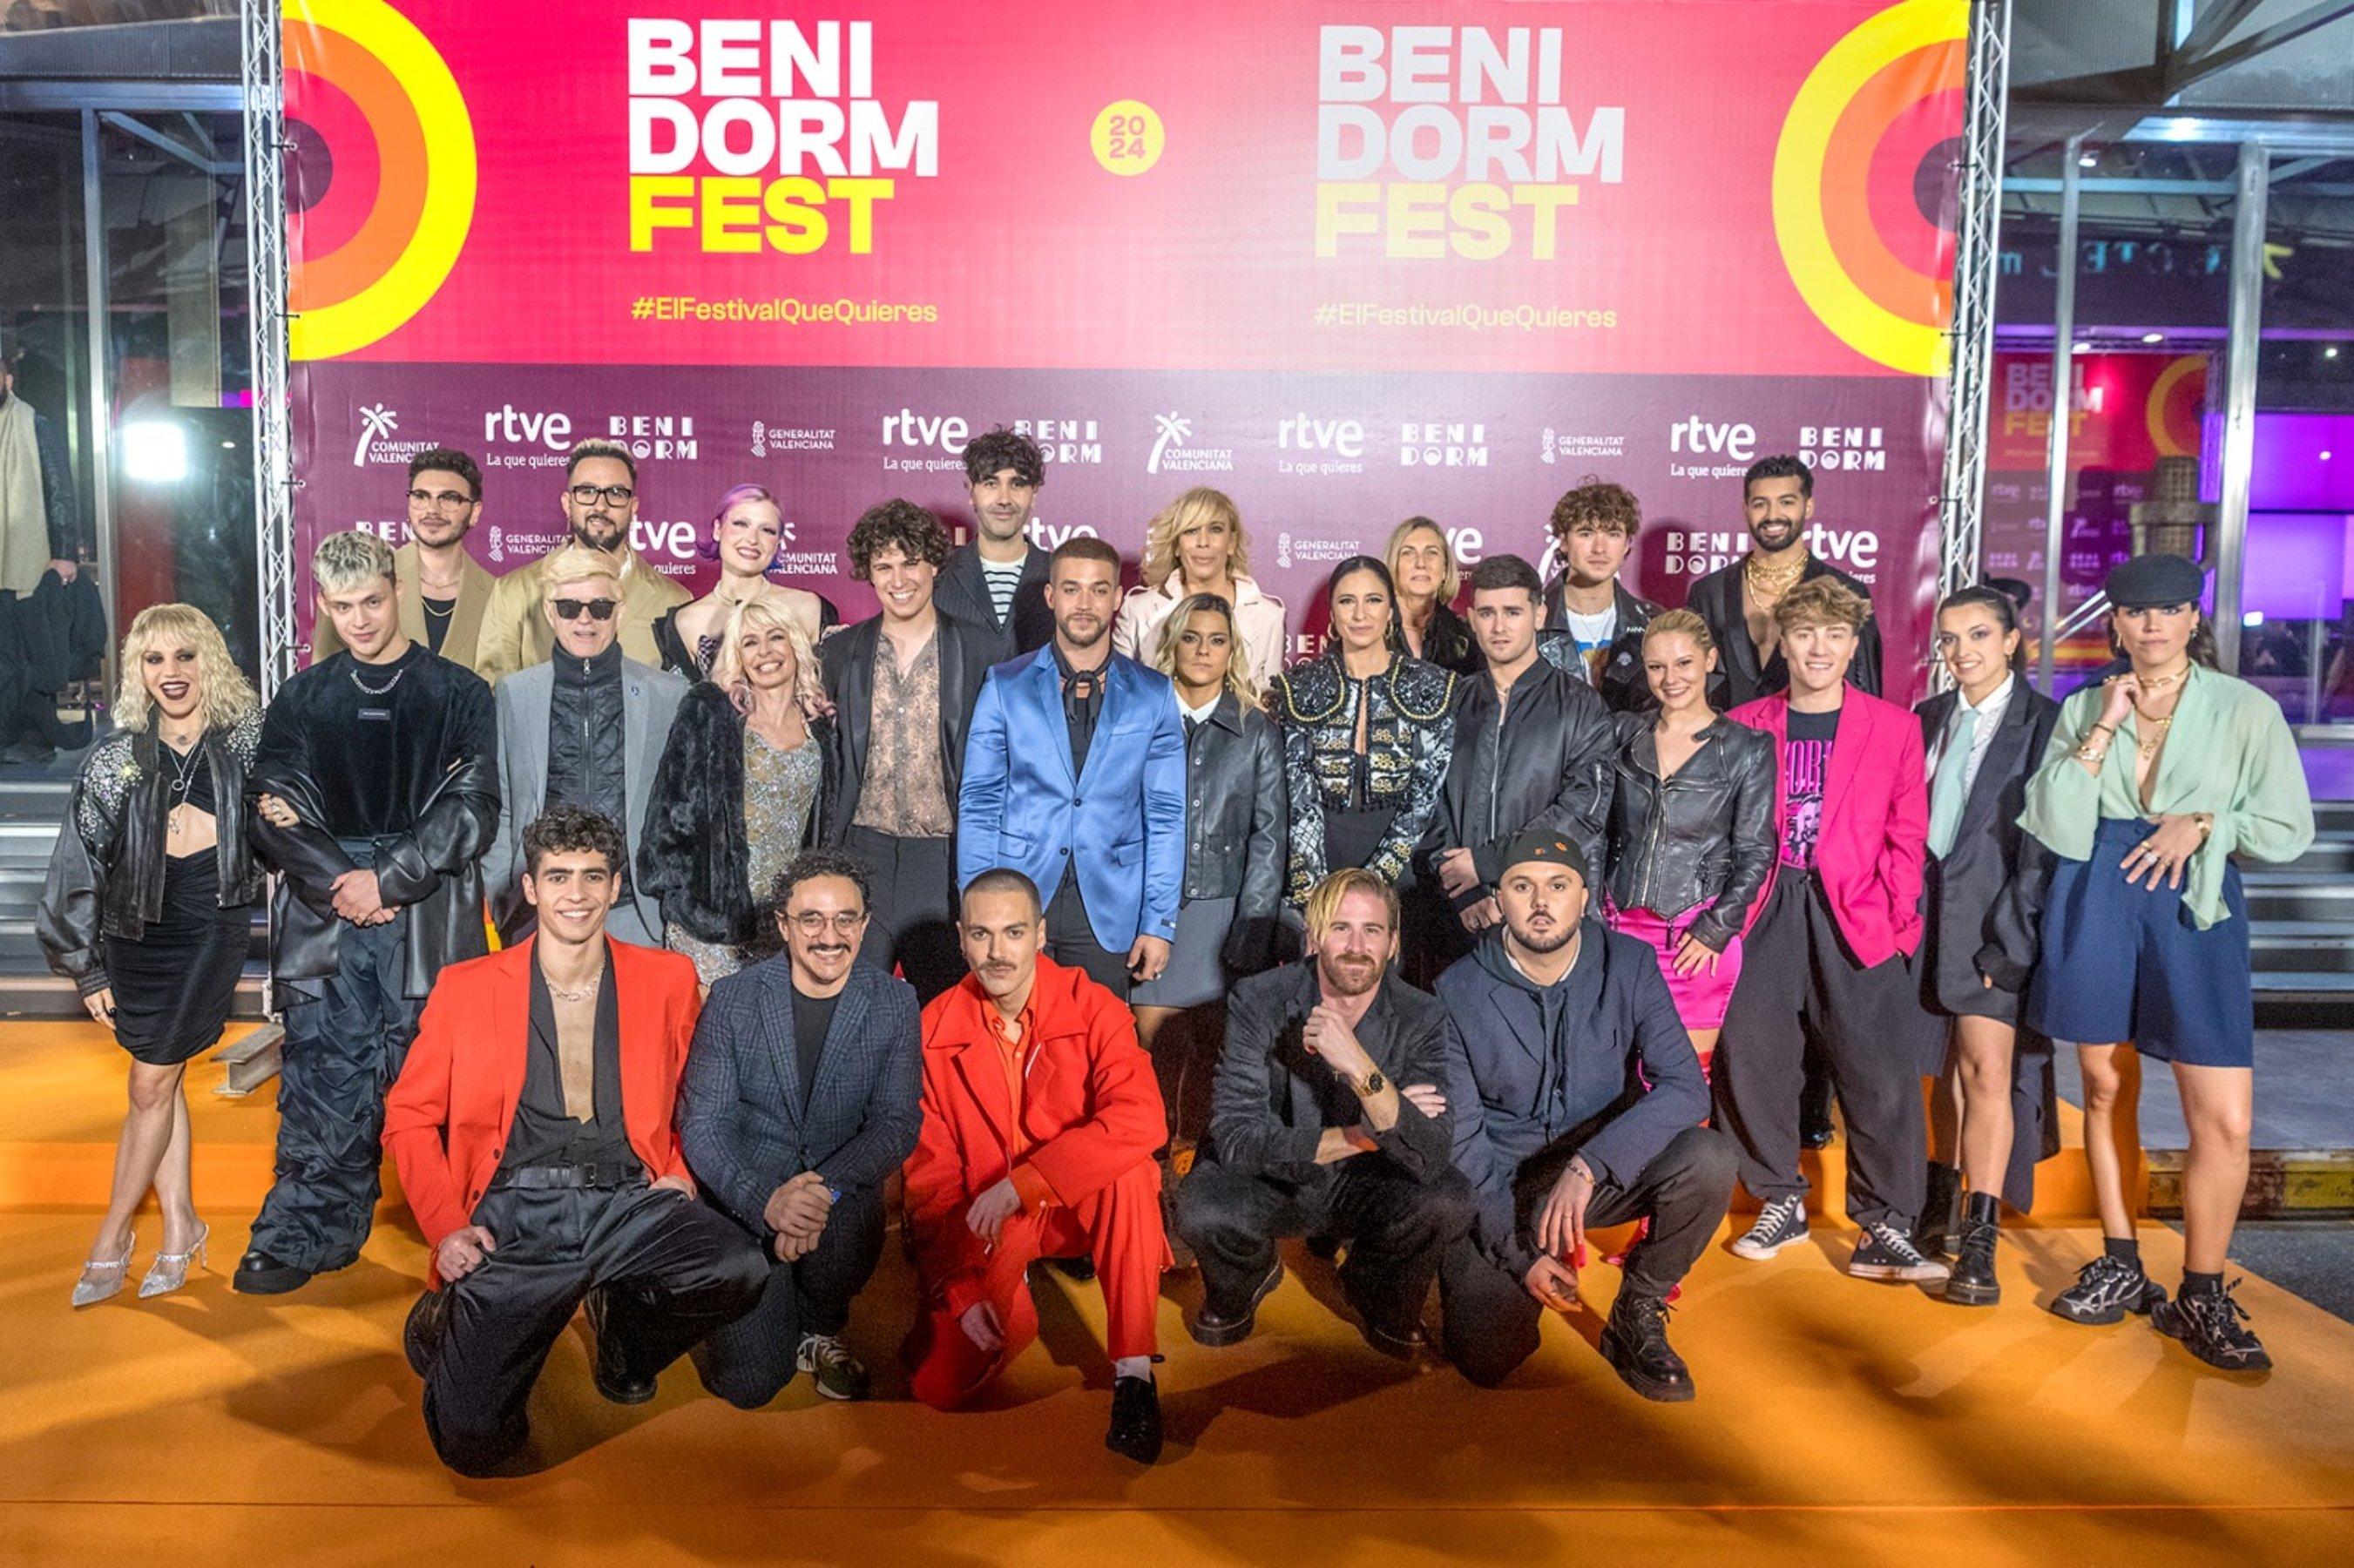 Arranca el Benidorm Fest: un cambio de look radical y la pifia en directo de uno de los vestidos más esperados